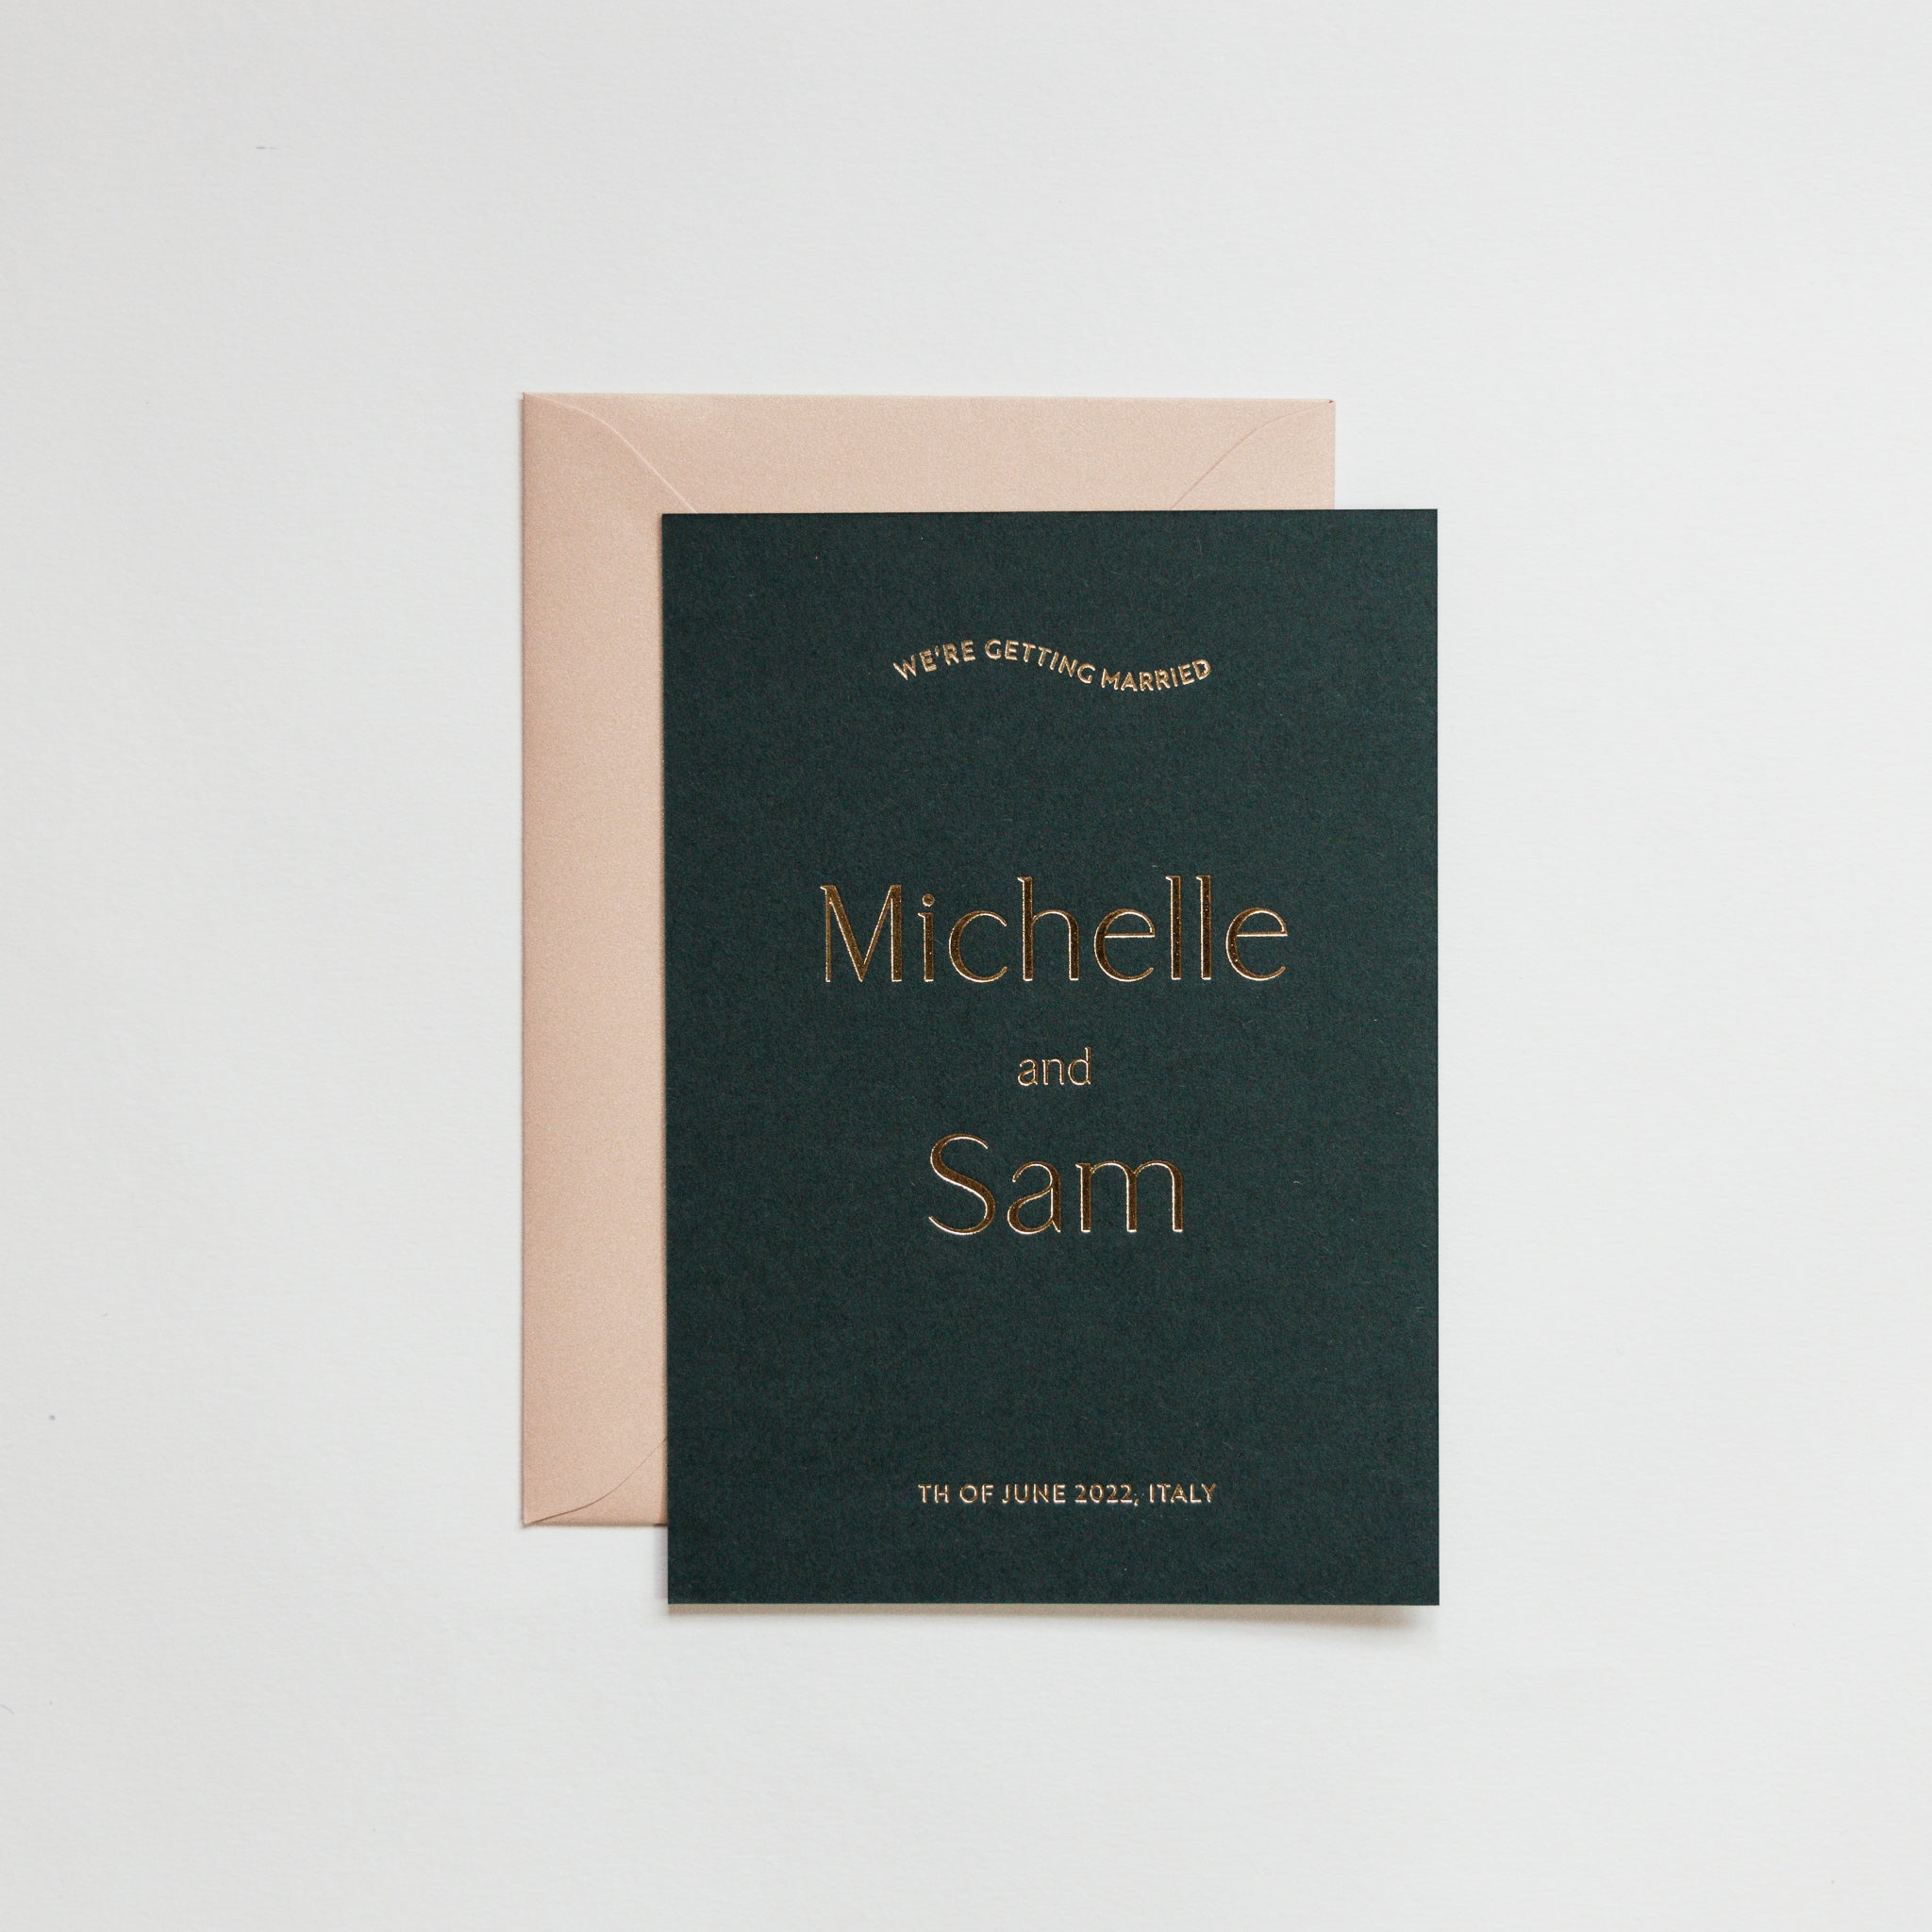 Trouw uitnodiging gedrukt op een prachtige diepe groene kleur GFsmith papier bedrukt met letterpress foliedruk in de kleur goud glimmend.